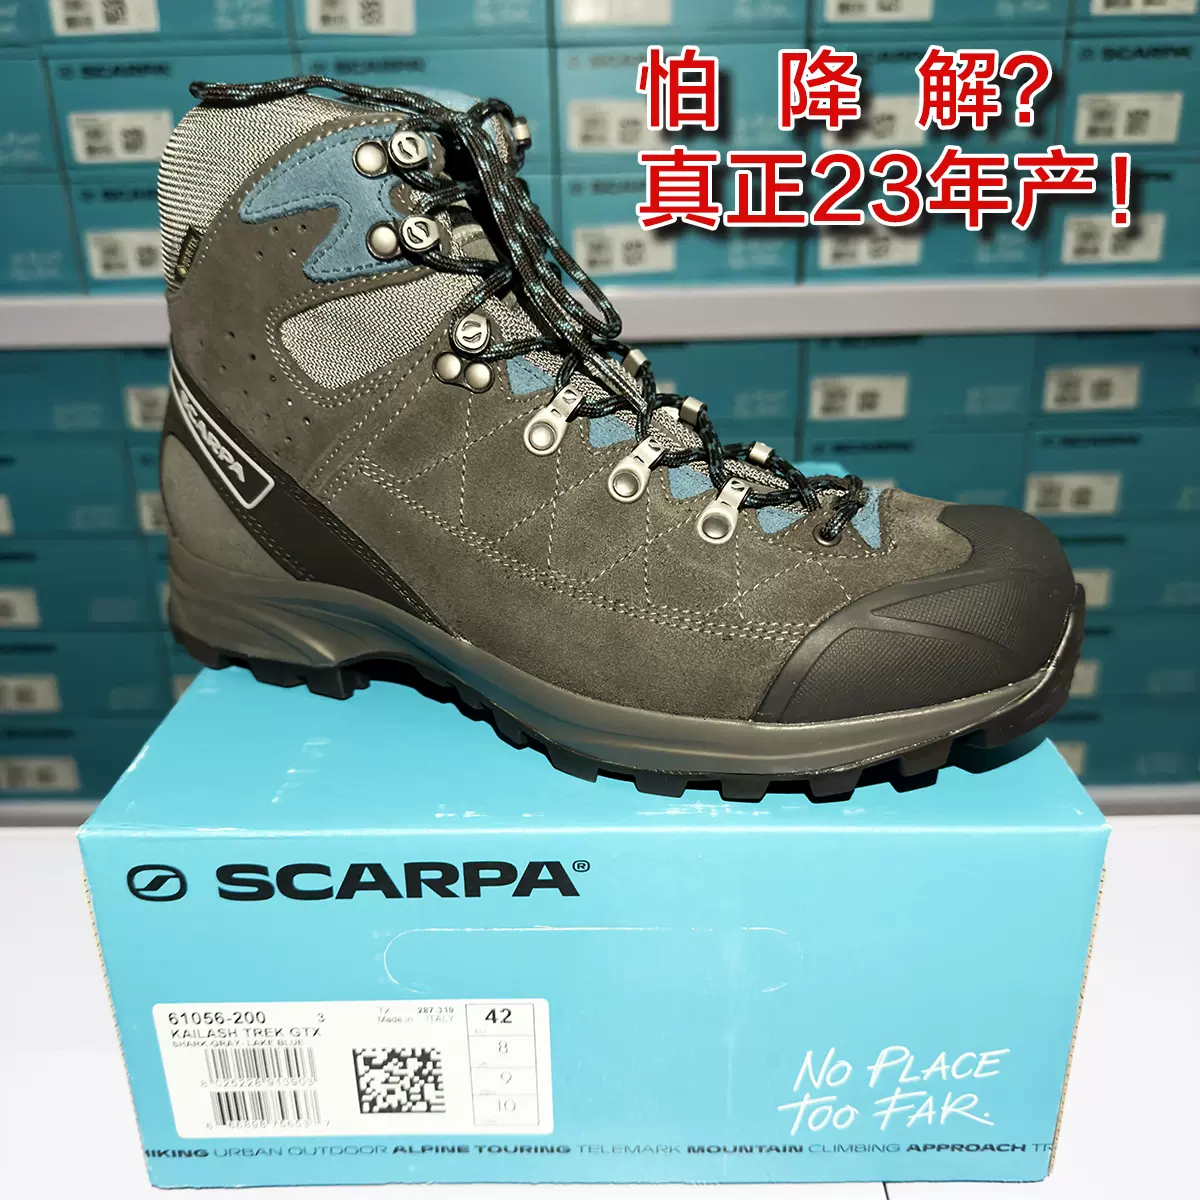 23款斯卡帕Scarpa Kailash Trek GTX冈仁波齐男女徒步登山鞋宽版-Taobao